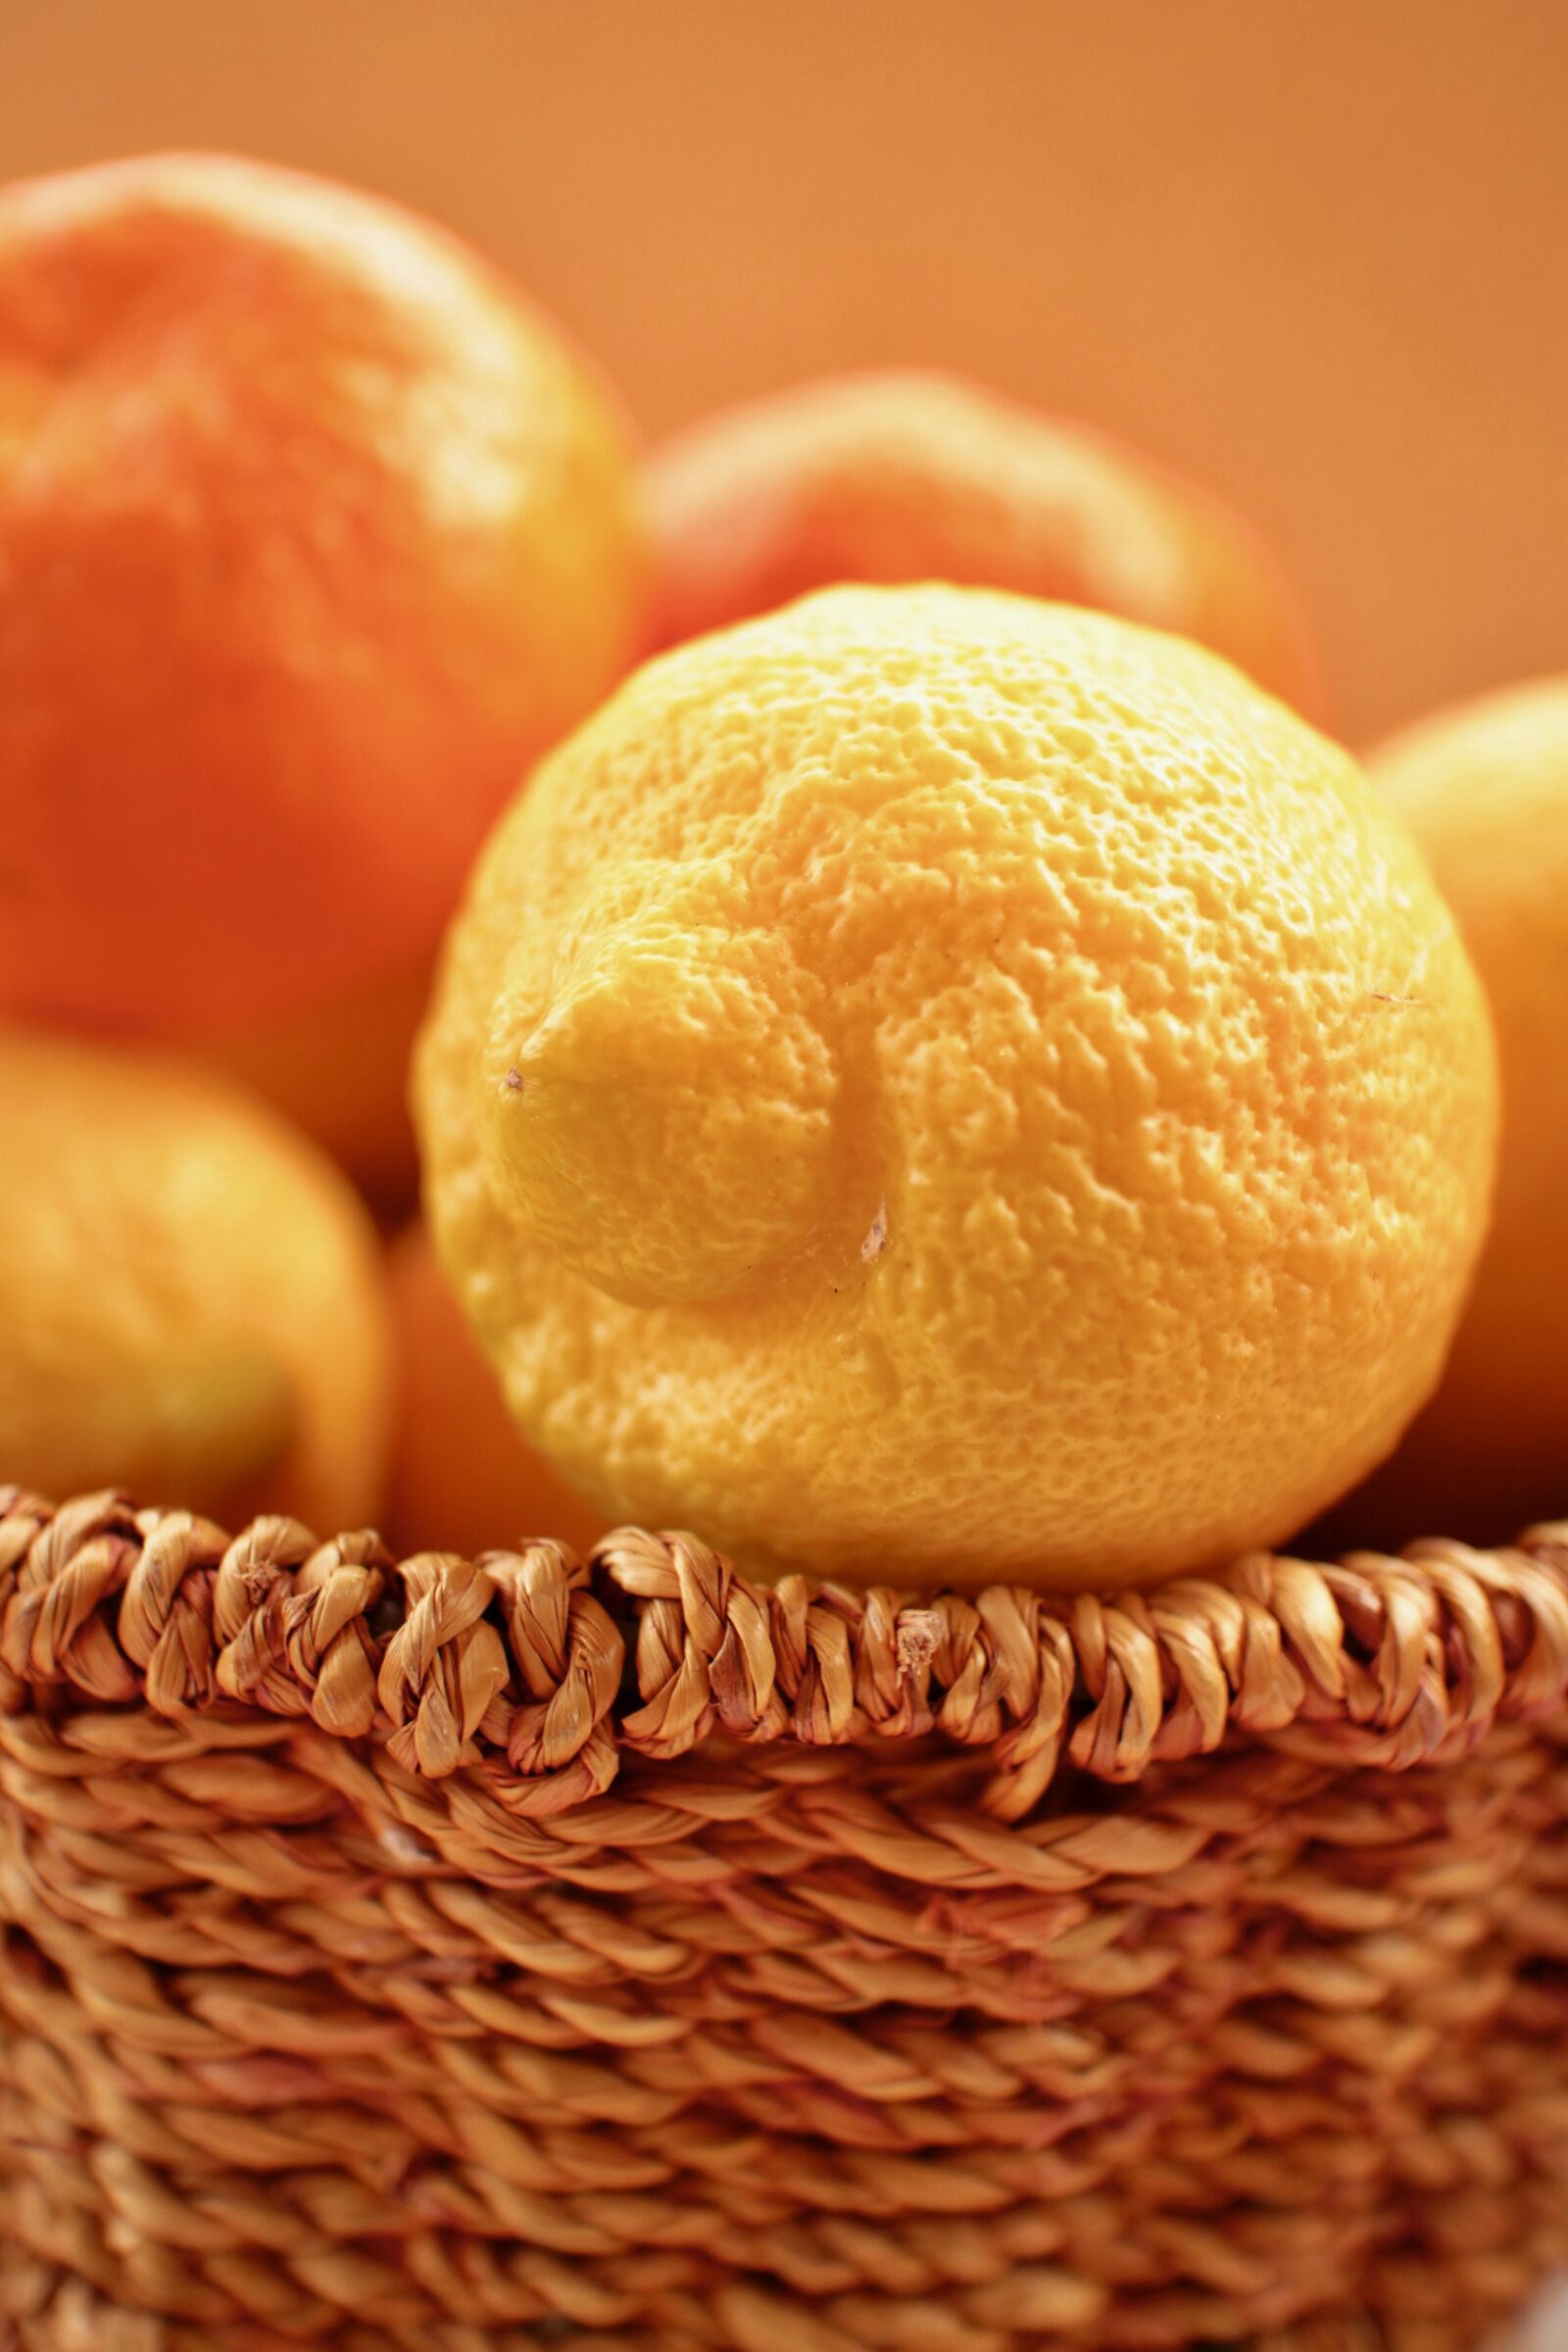 Canon EOS M sample photo. Lemons, citrus fruits, fruit photography